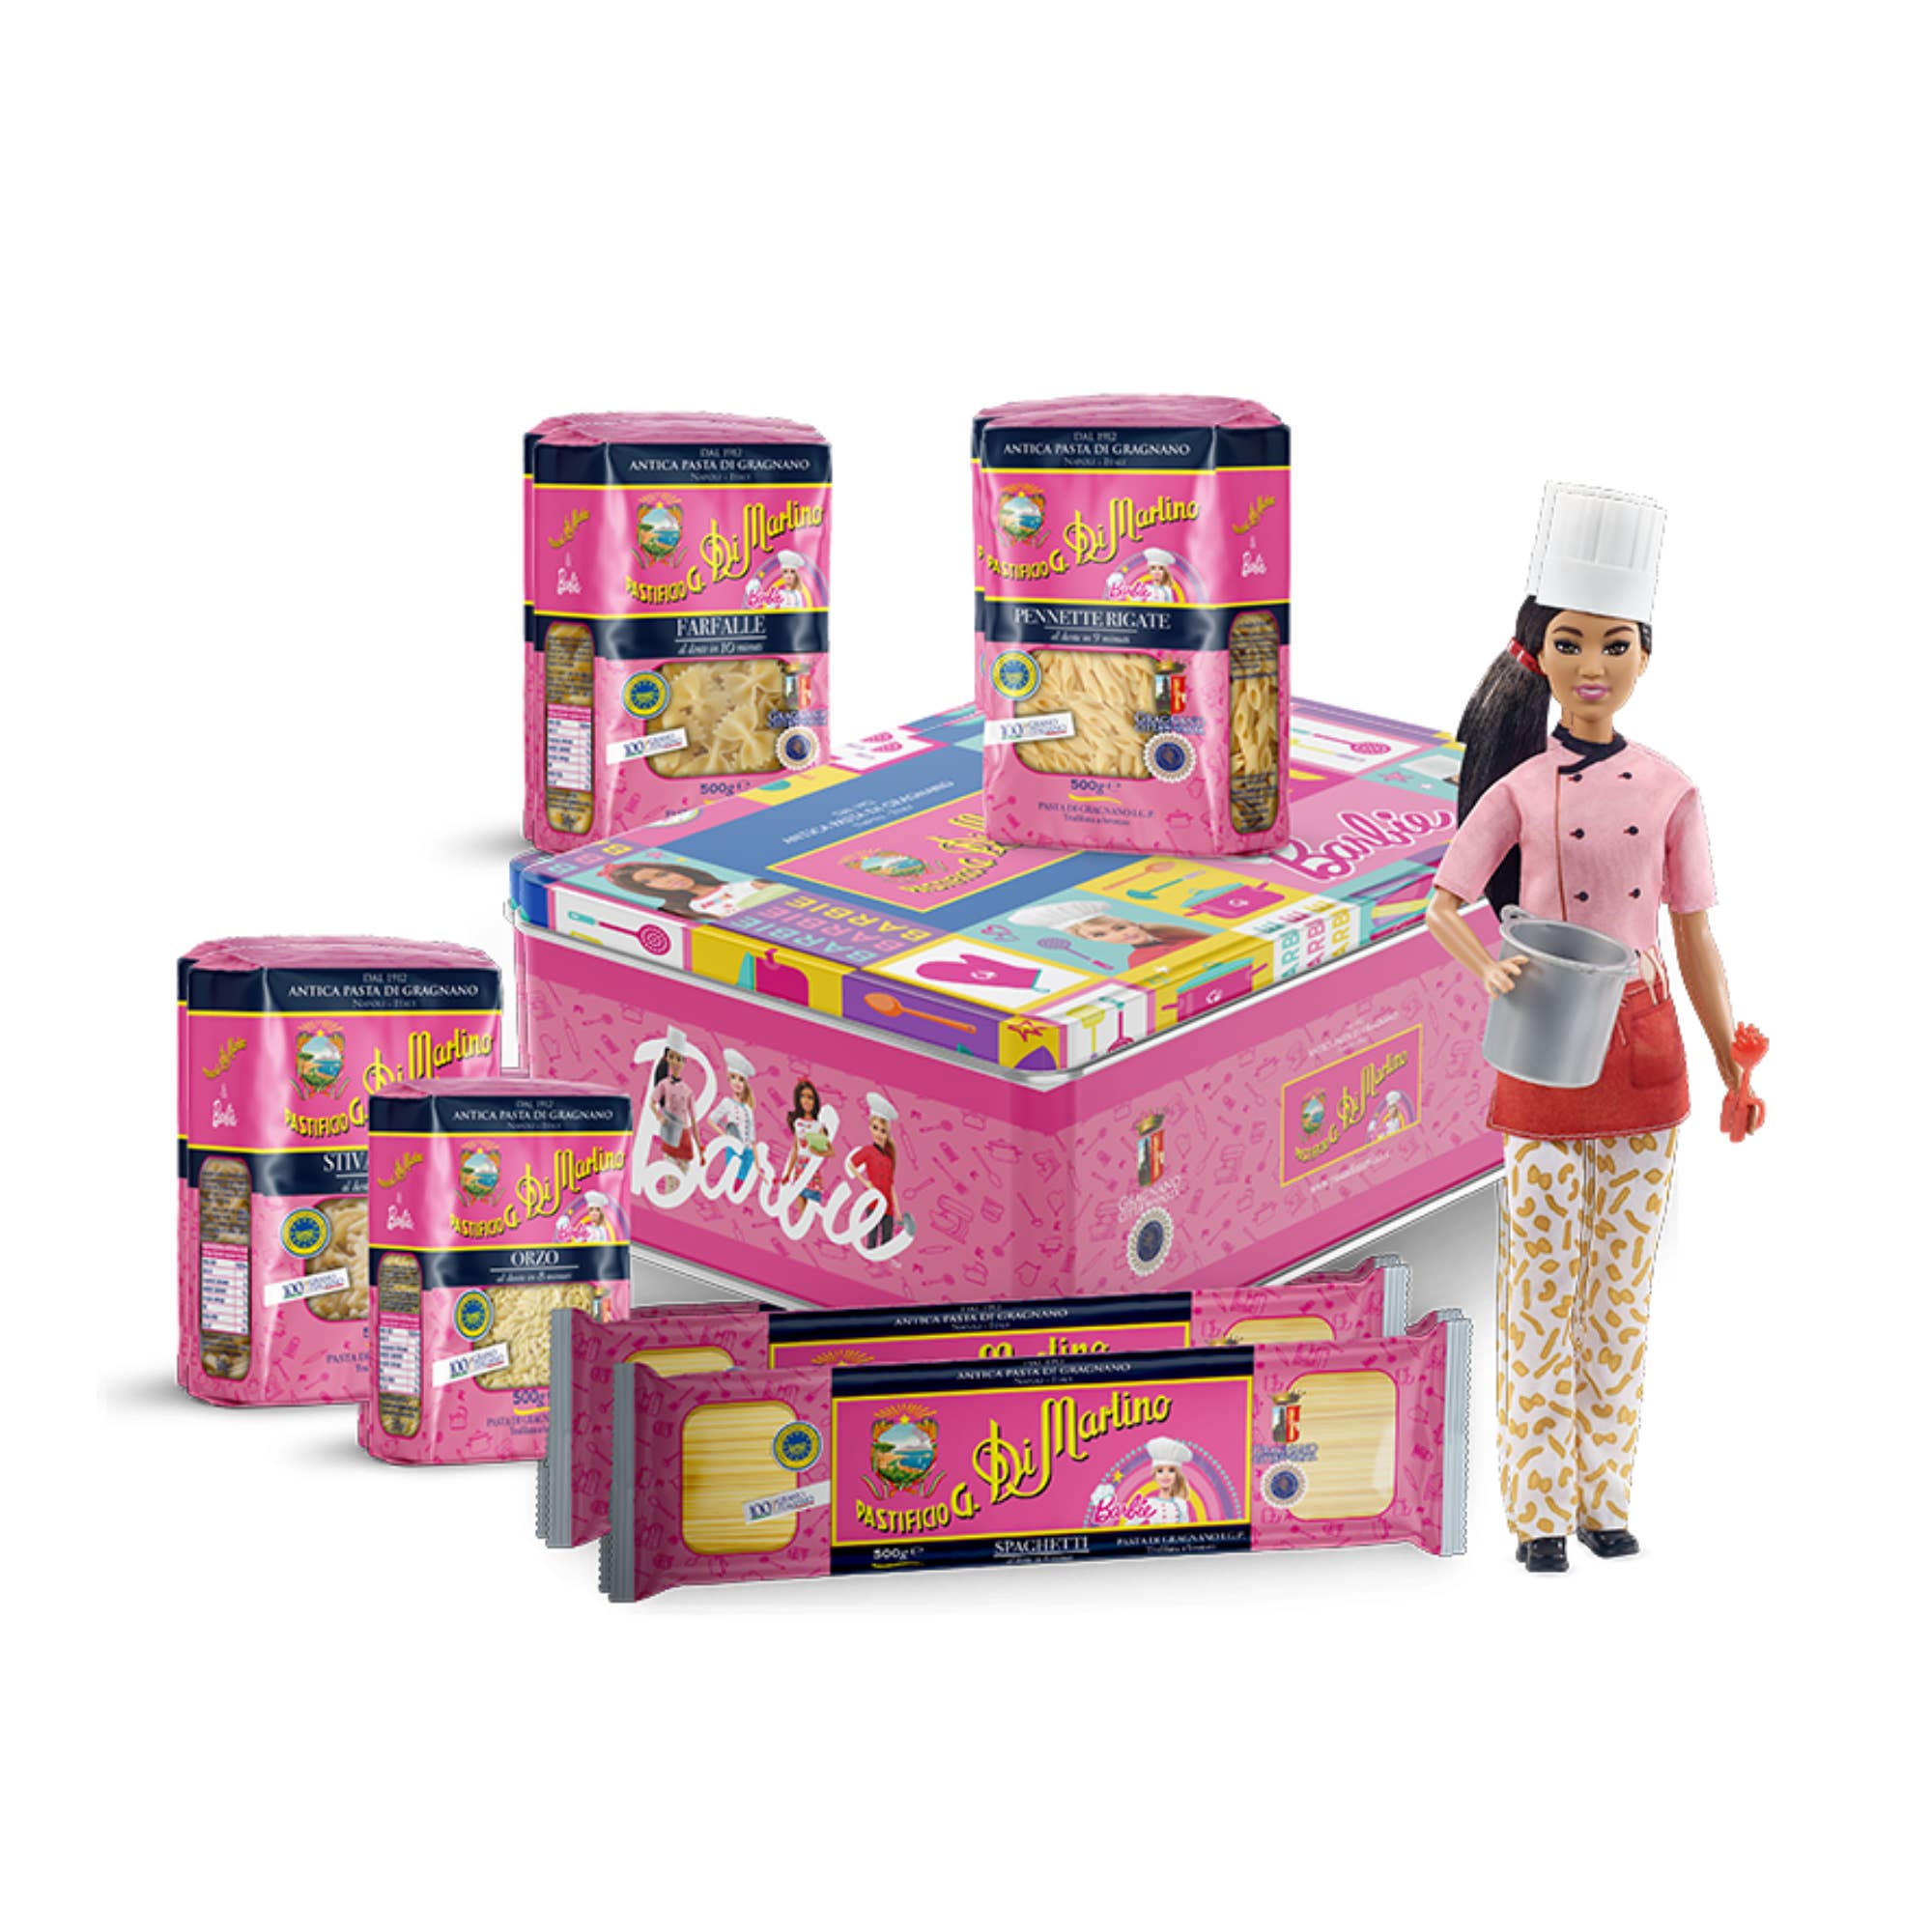 Pasta Gift Box - Barbie Edition by Pastificio di Martino